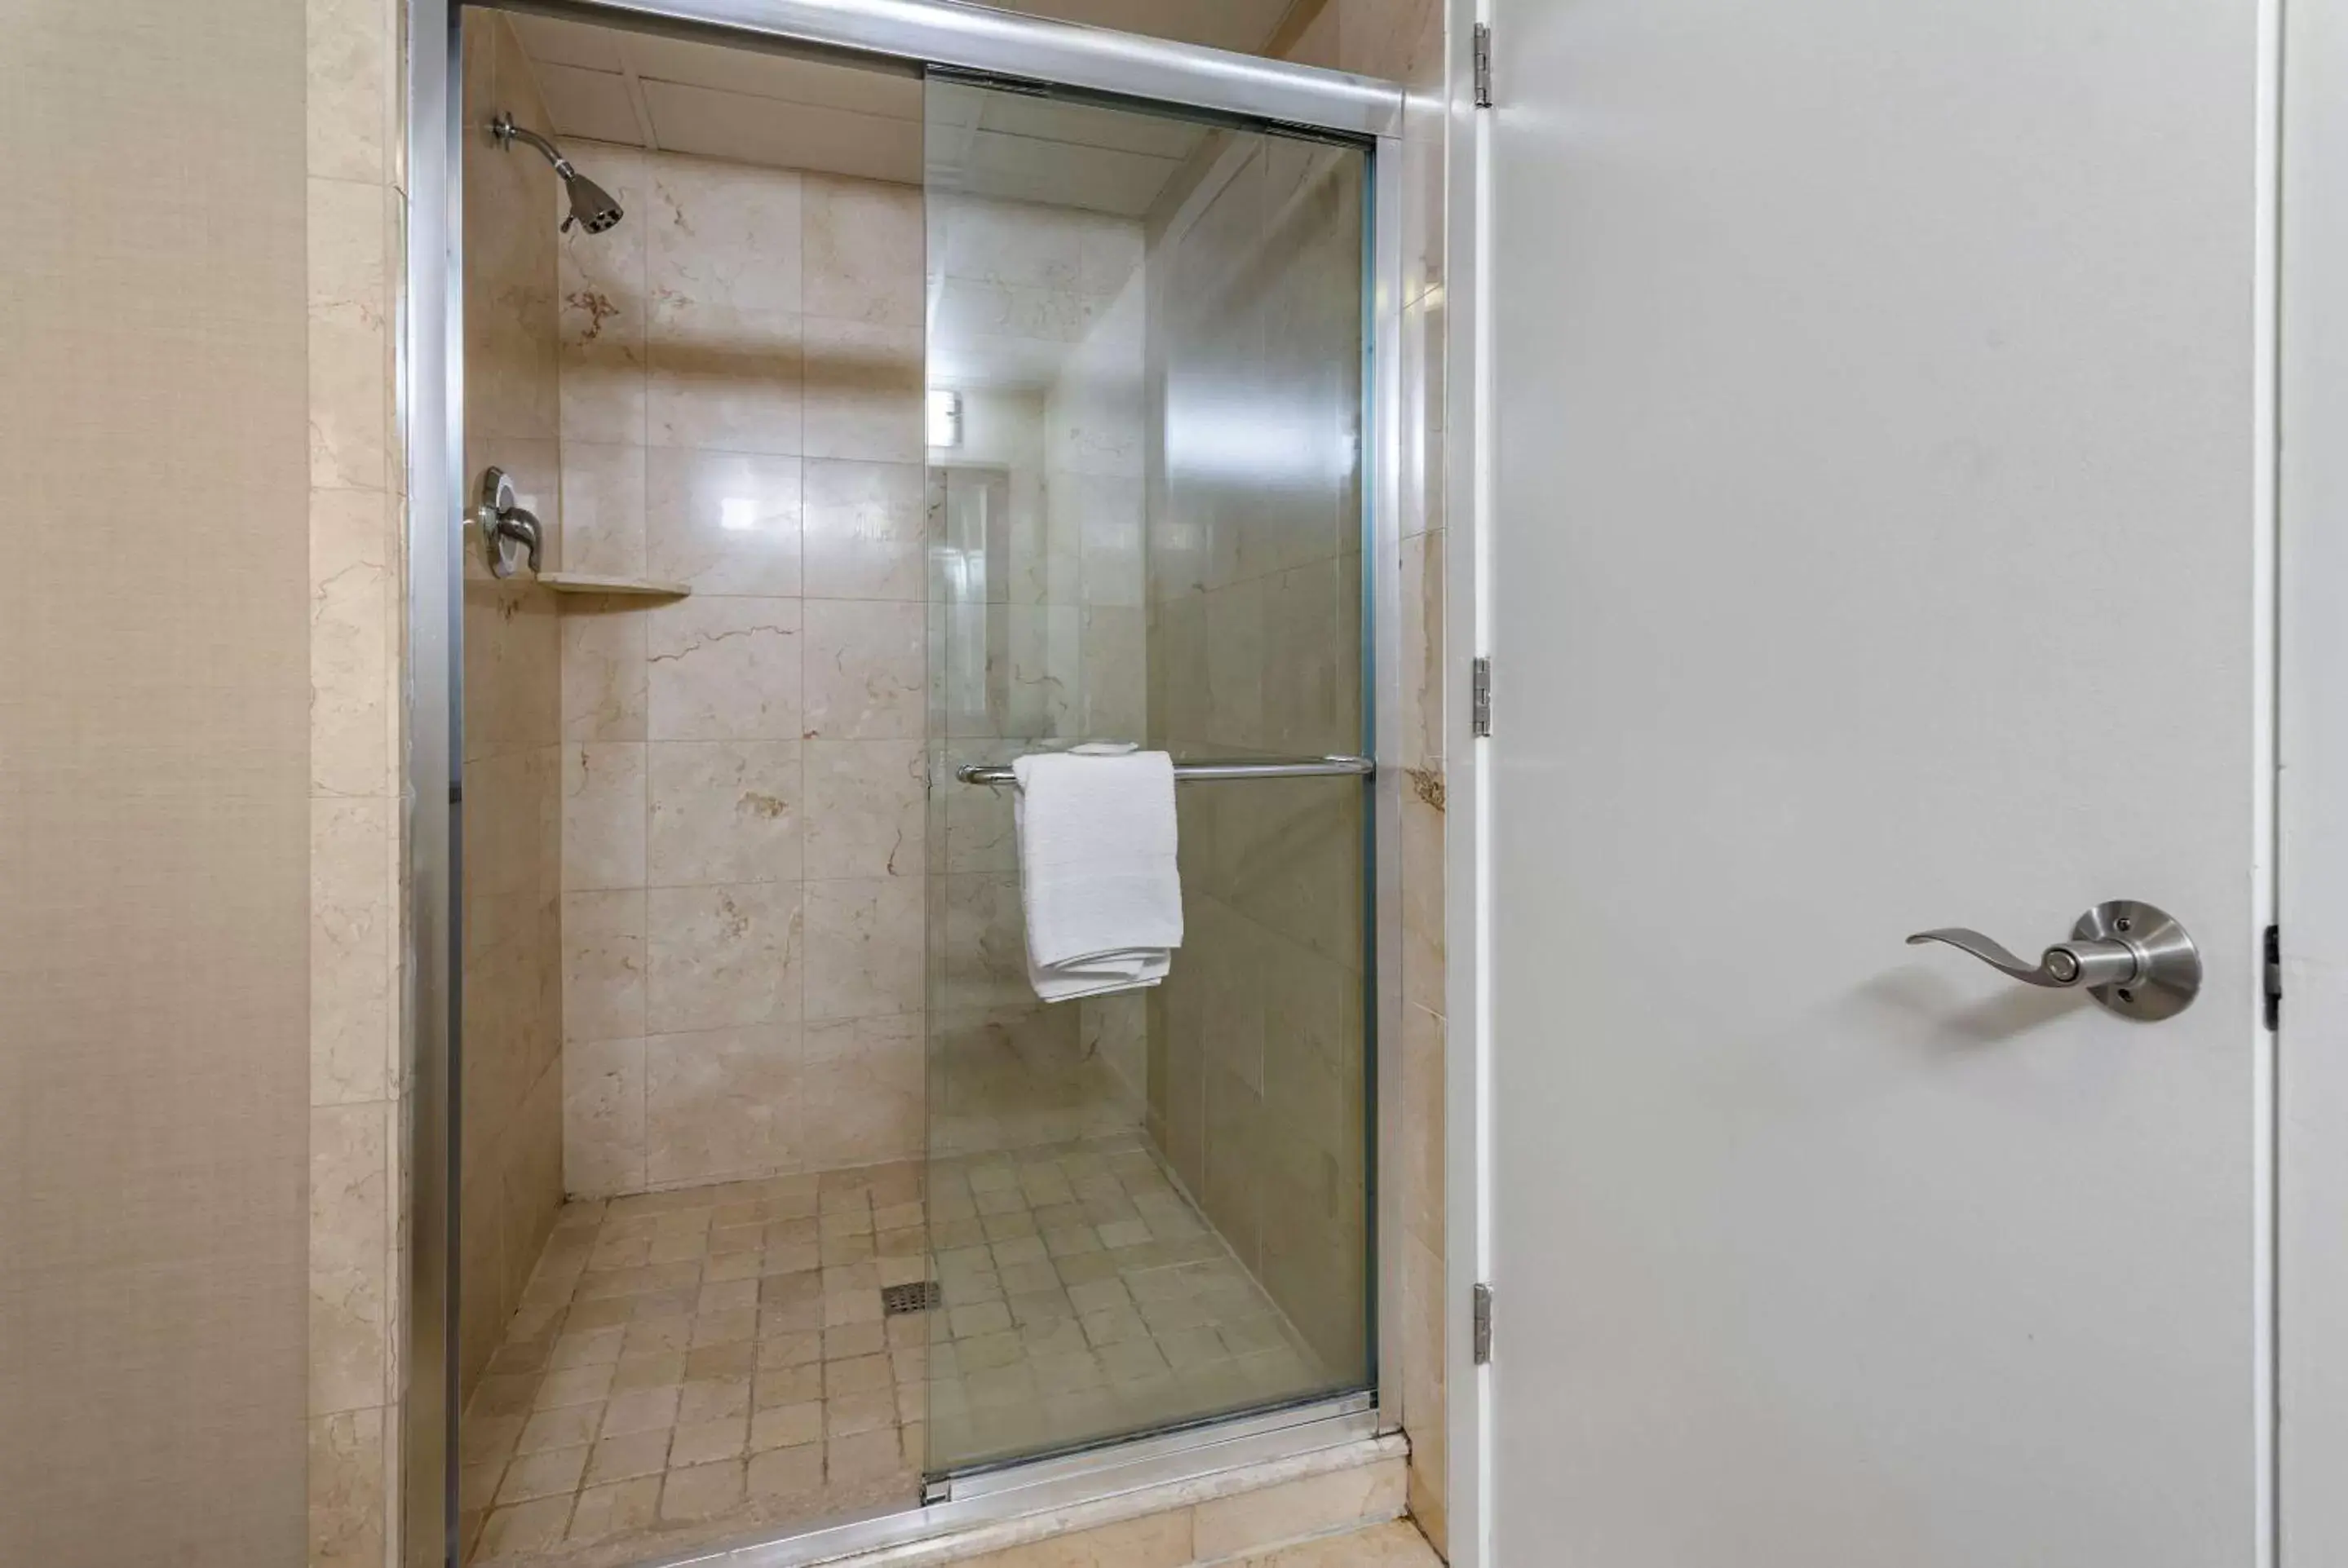 Photo of the whole room, Bathroom in Comfort Inn & Suites Glen Mills - Concordville